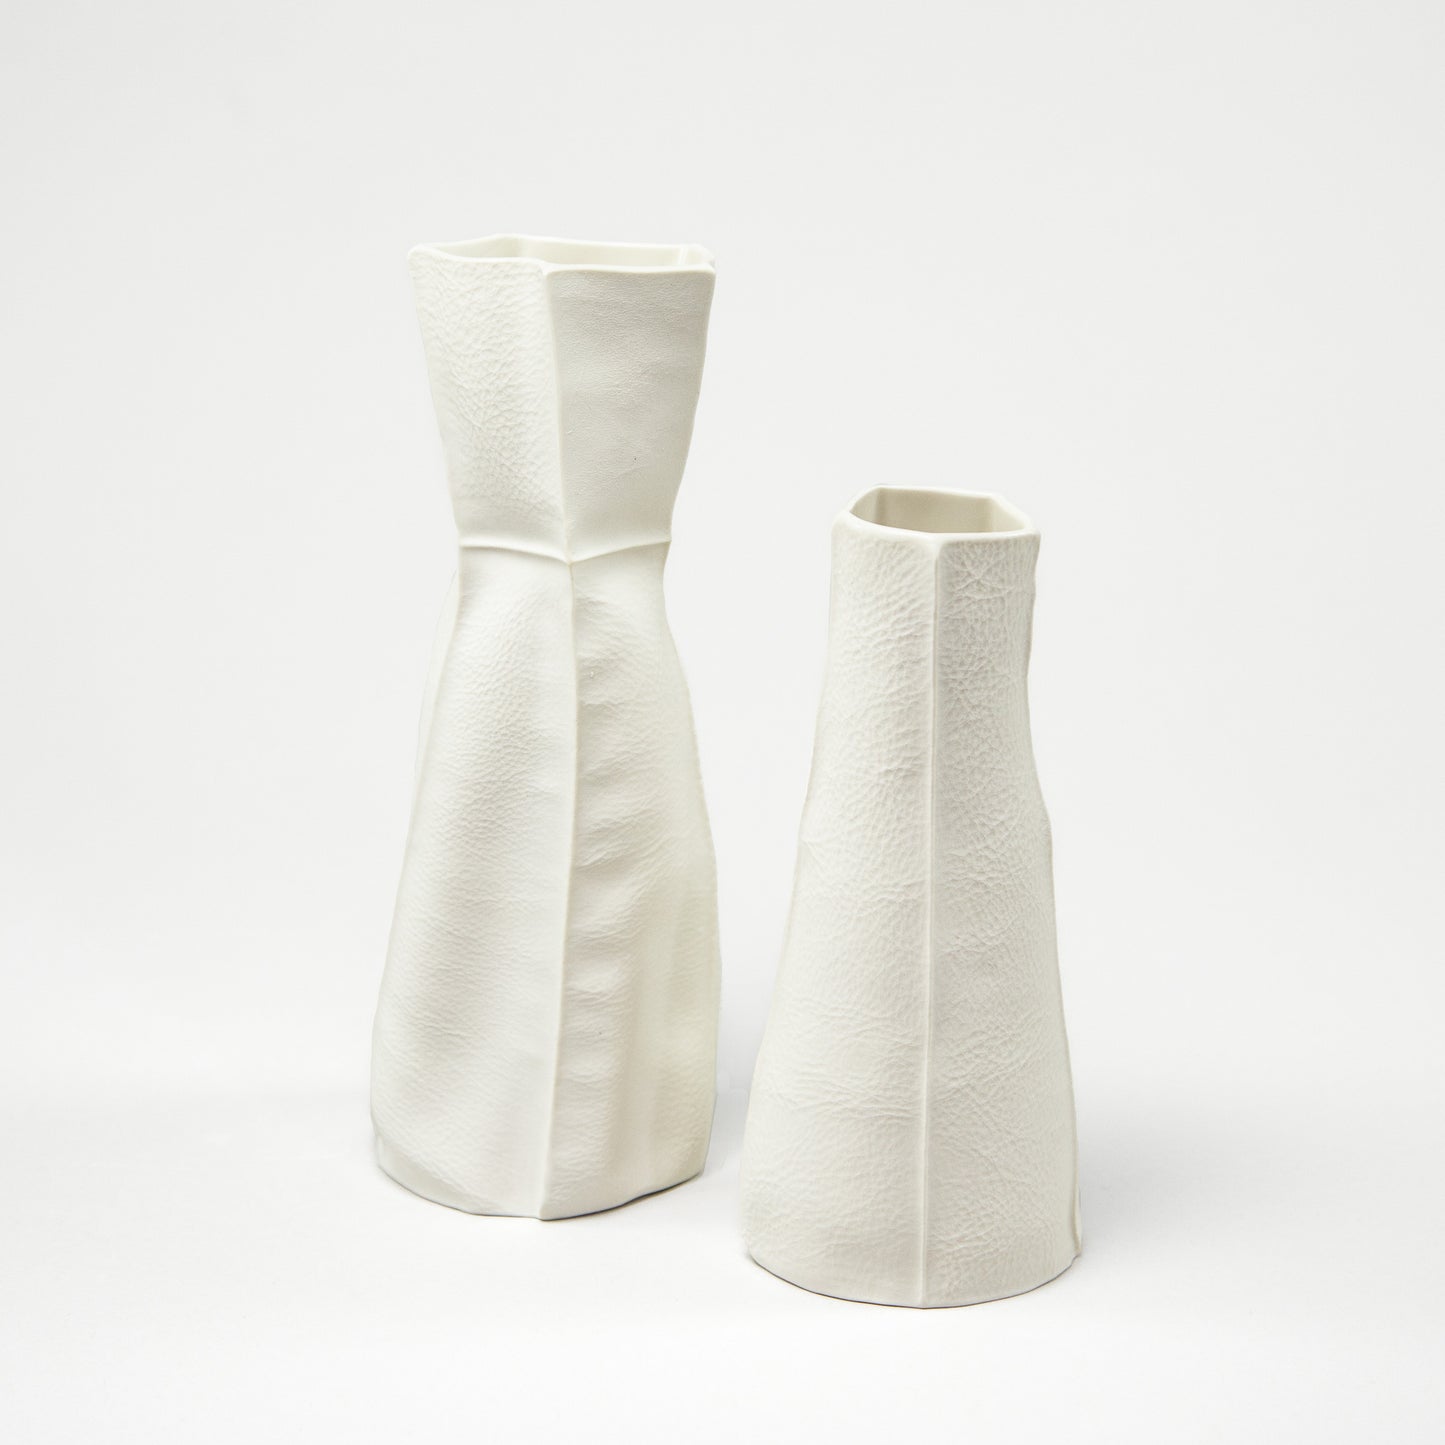 Pair of Kawa Vases 04 & 05